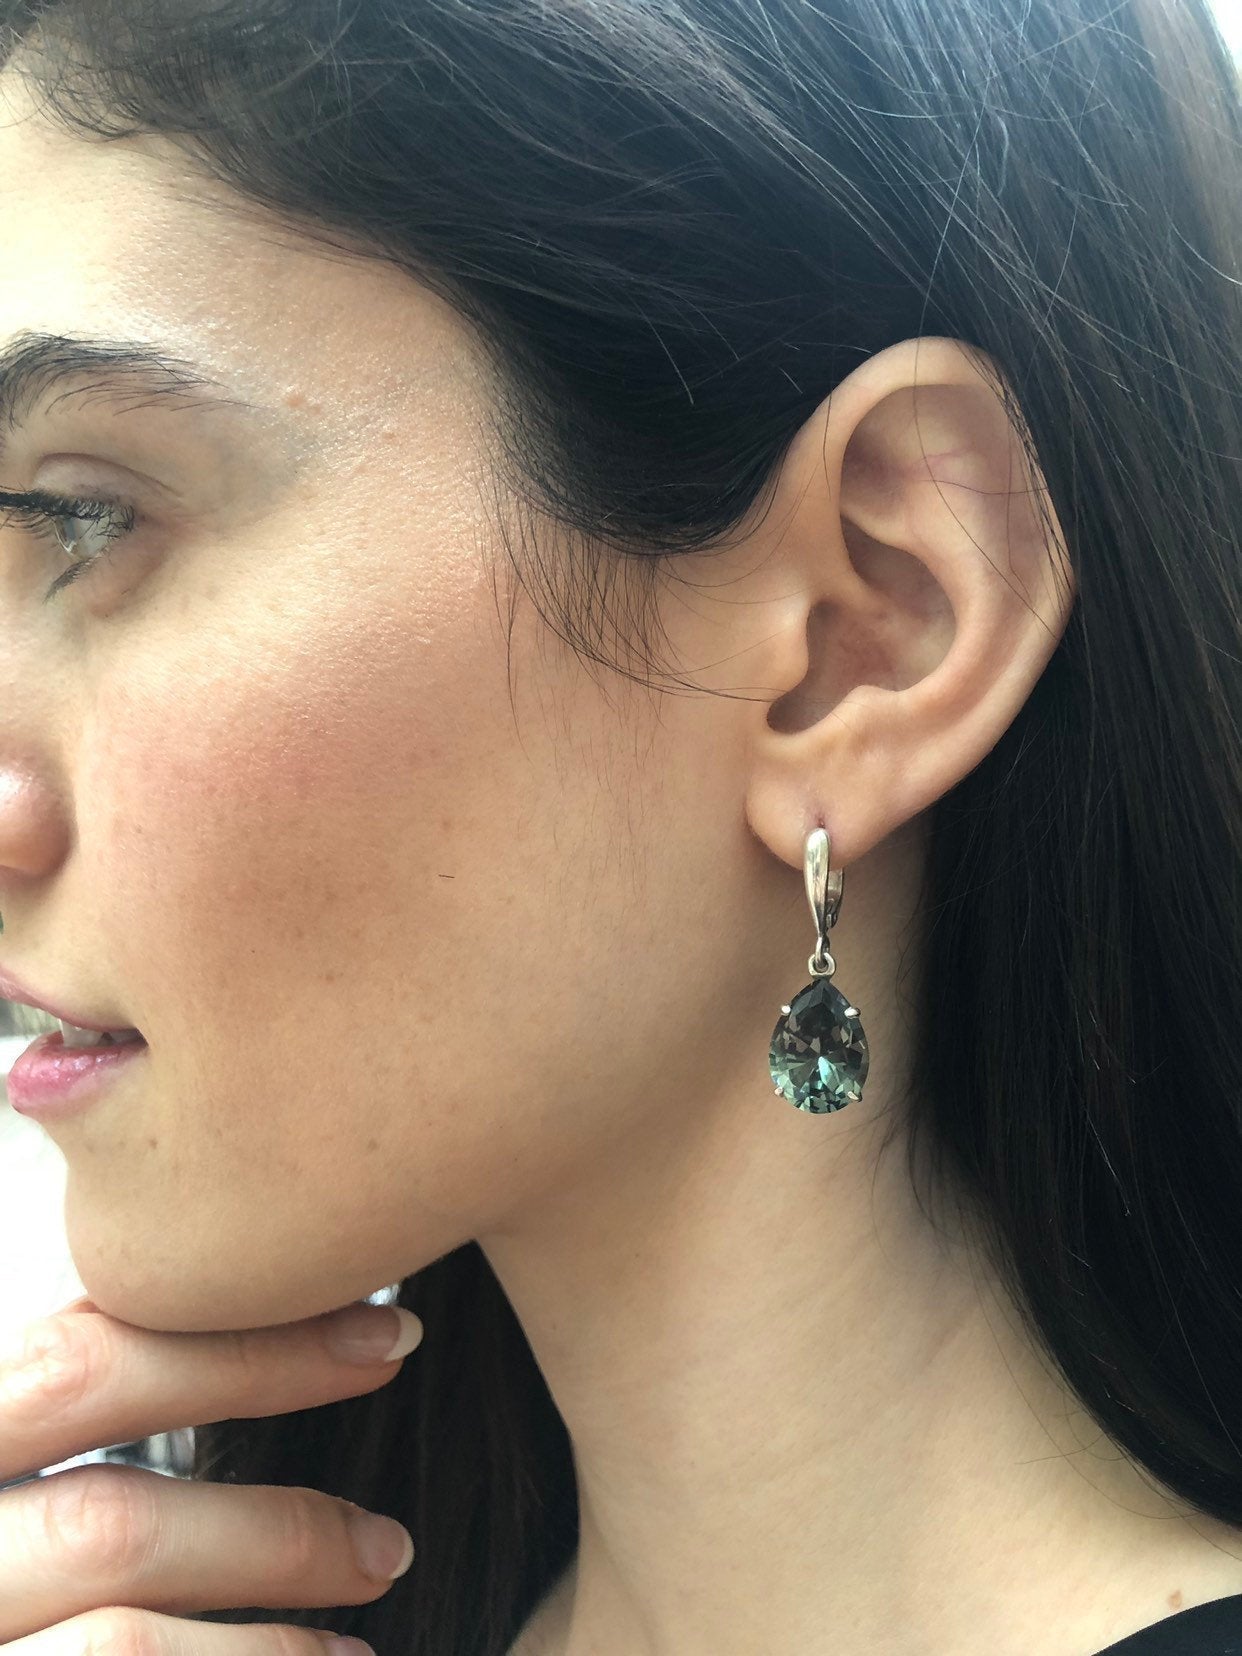 Green Diamond Earrings, Created Diamond, Dangling Earrings, Teardrop Earrings, Long Earrings, Vintage Earrings, Solid Silver Earrings